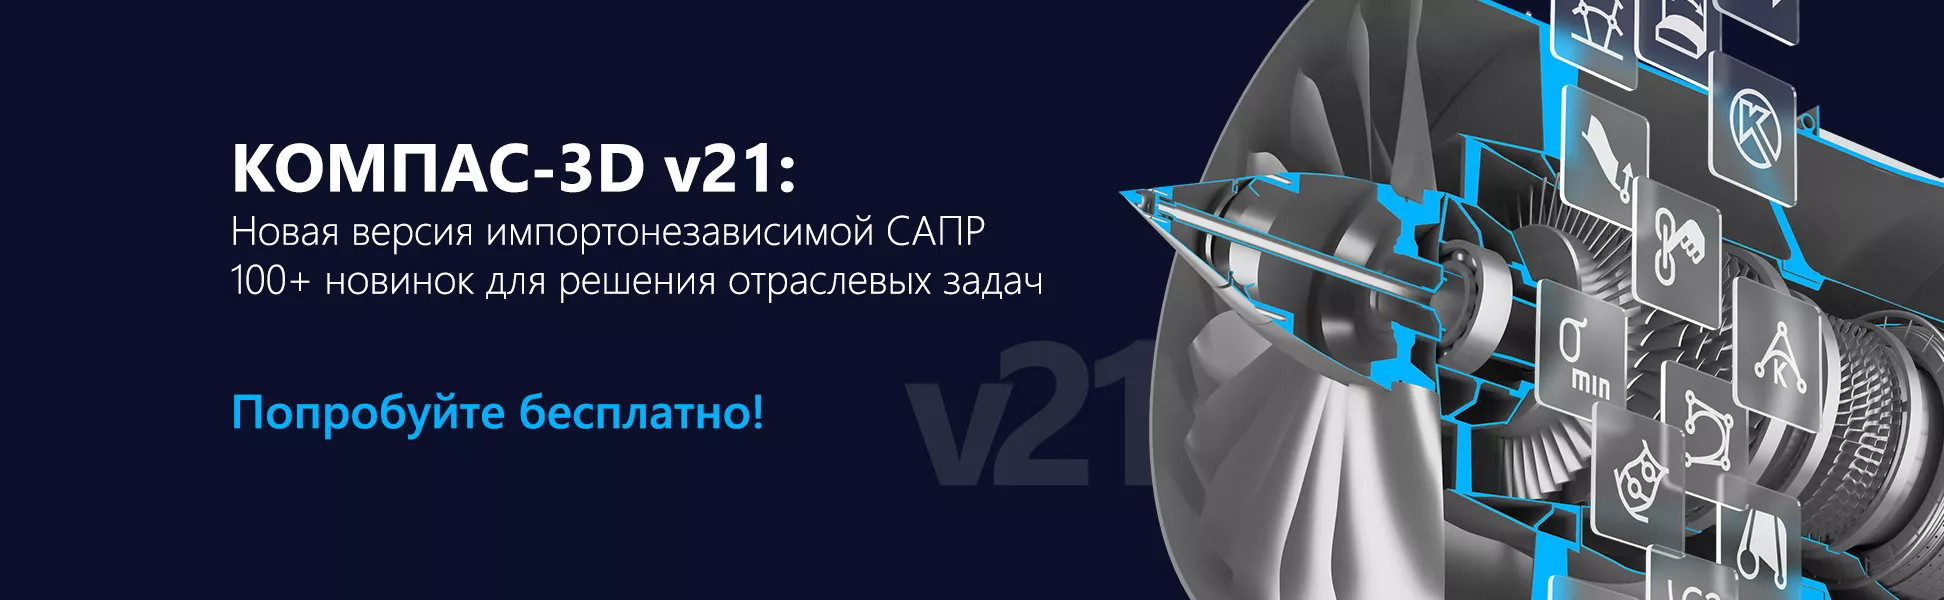 Представляем новый КОМПАС-3D v21. Новая версия уже доступна для покупки и скачивания.